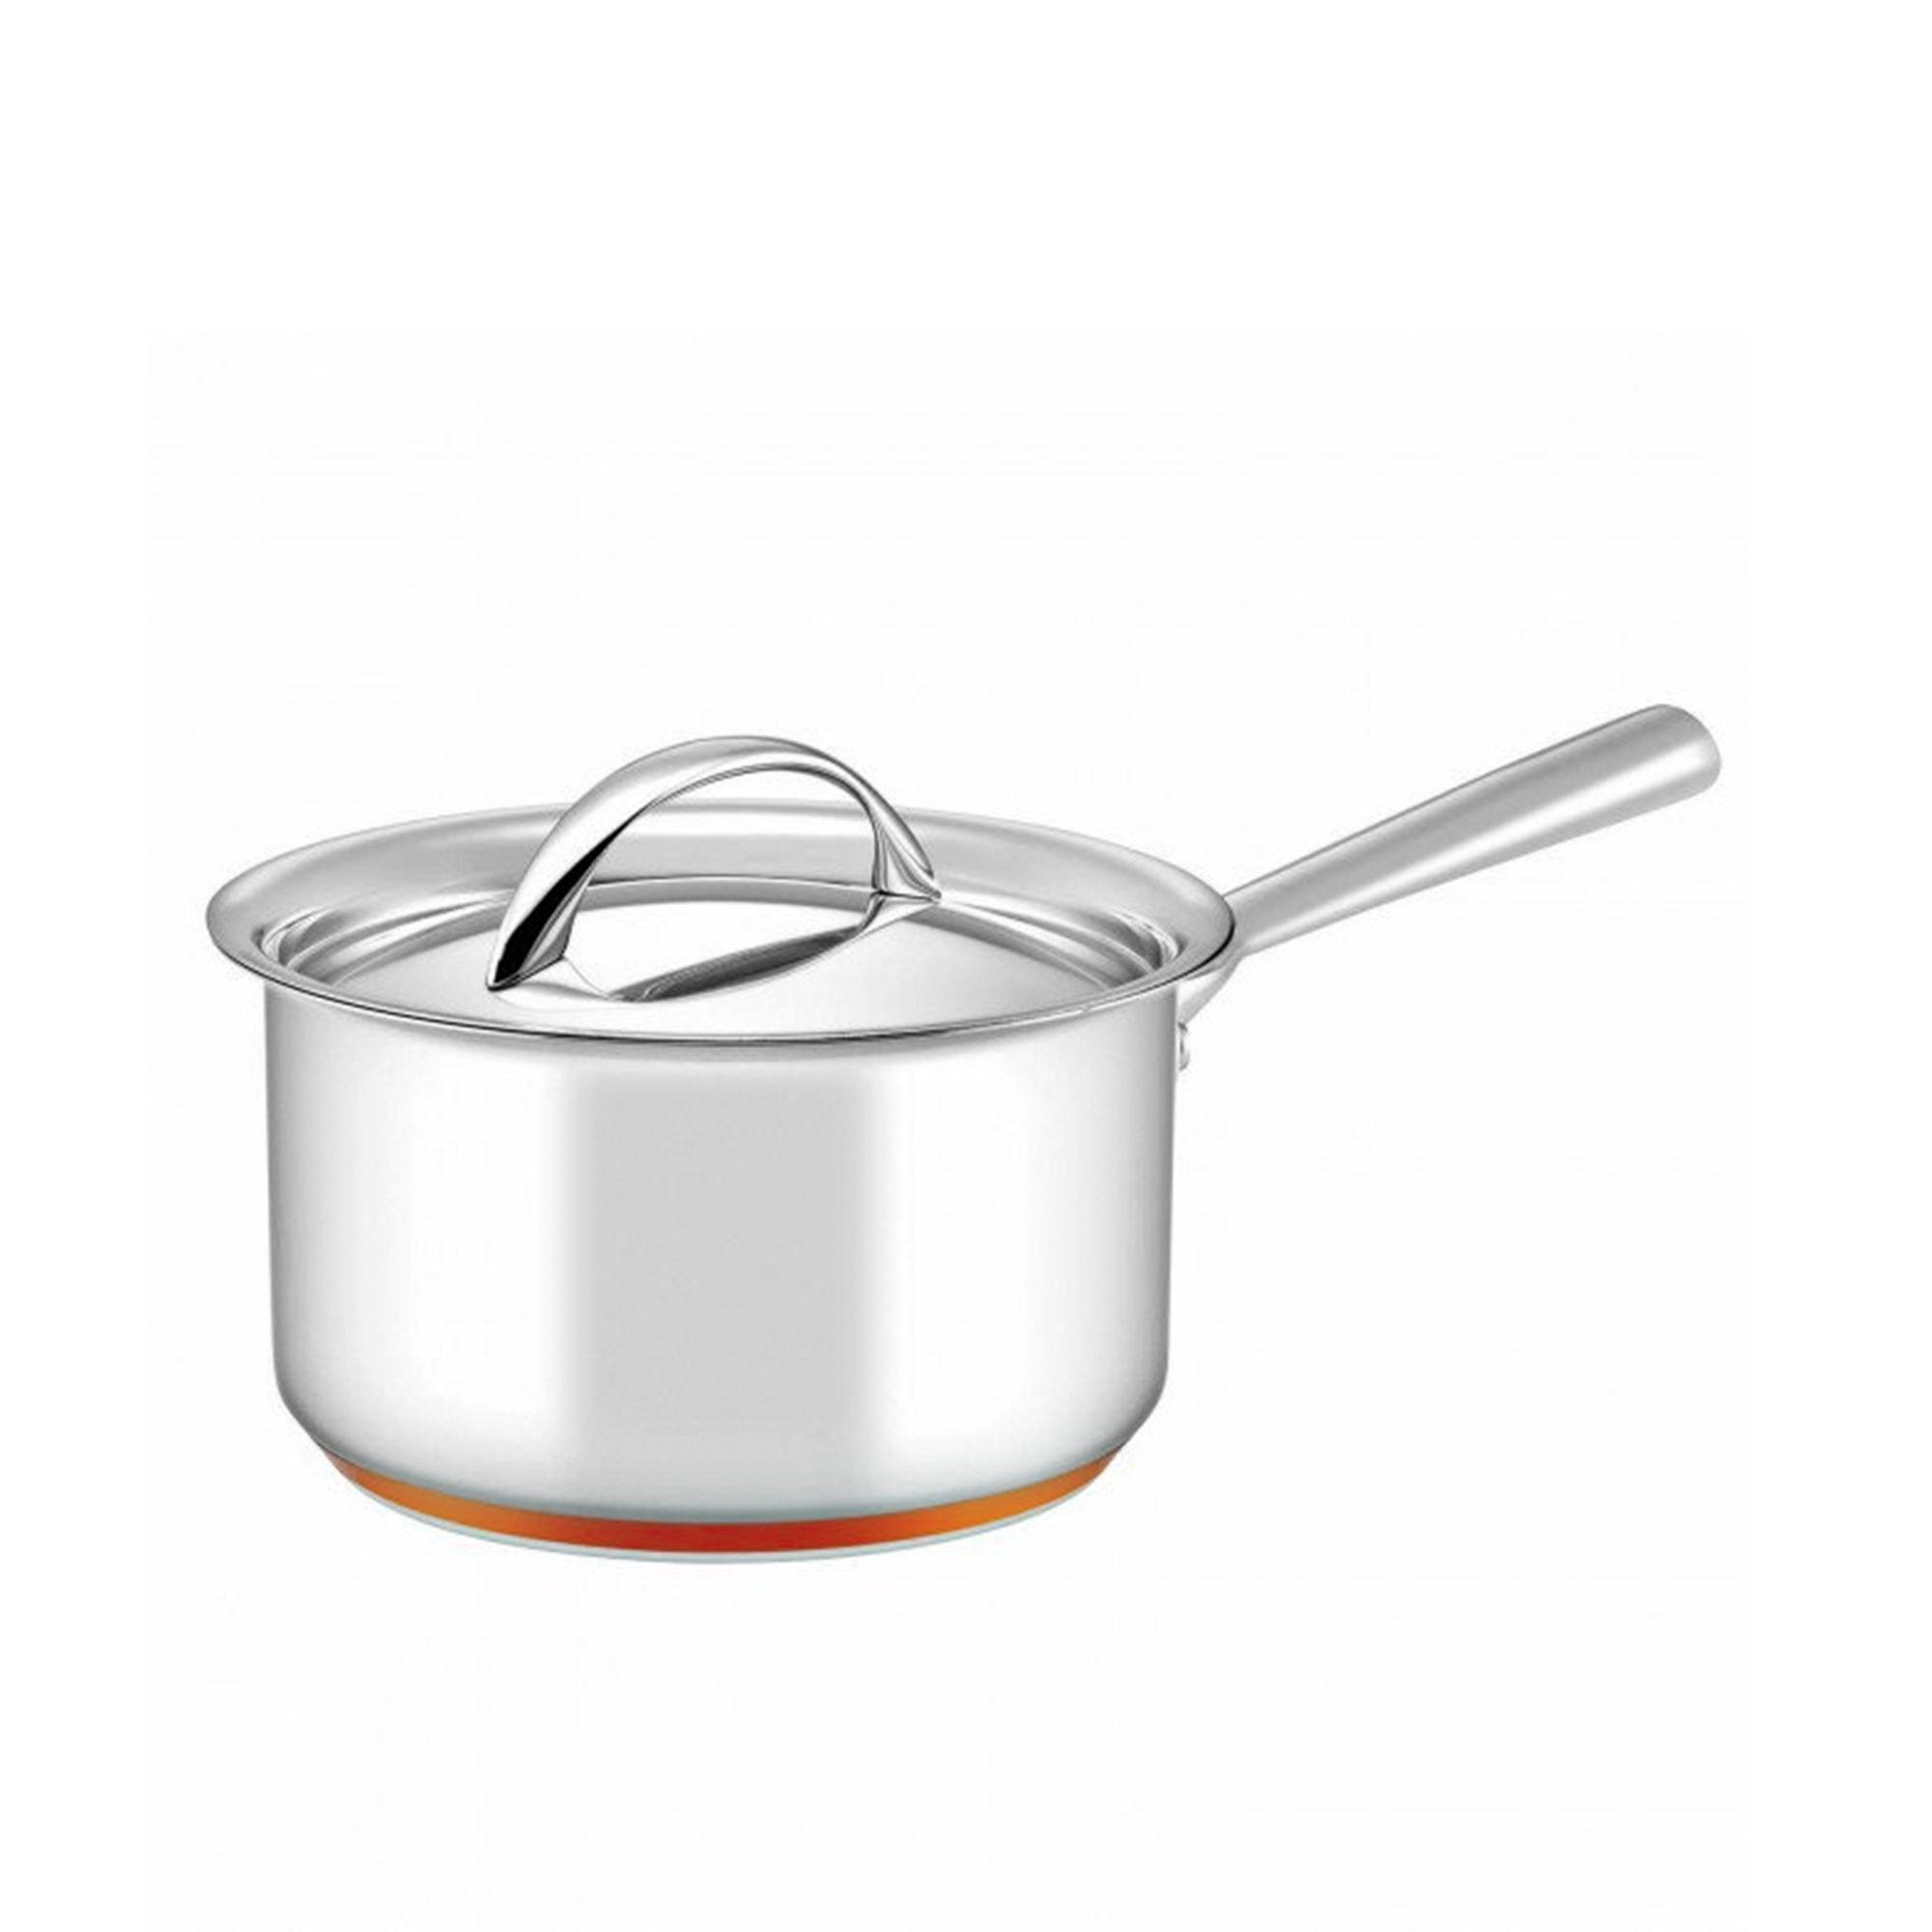 Essteele Per Vita 3pc Stainless Steel Cookware Set Image 6